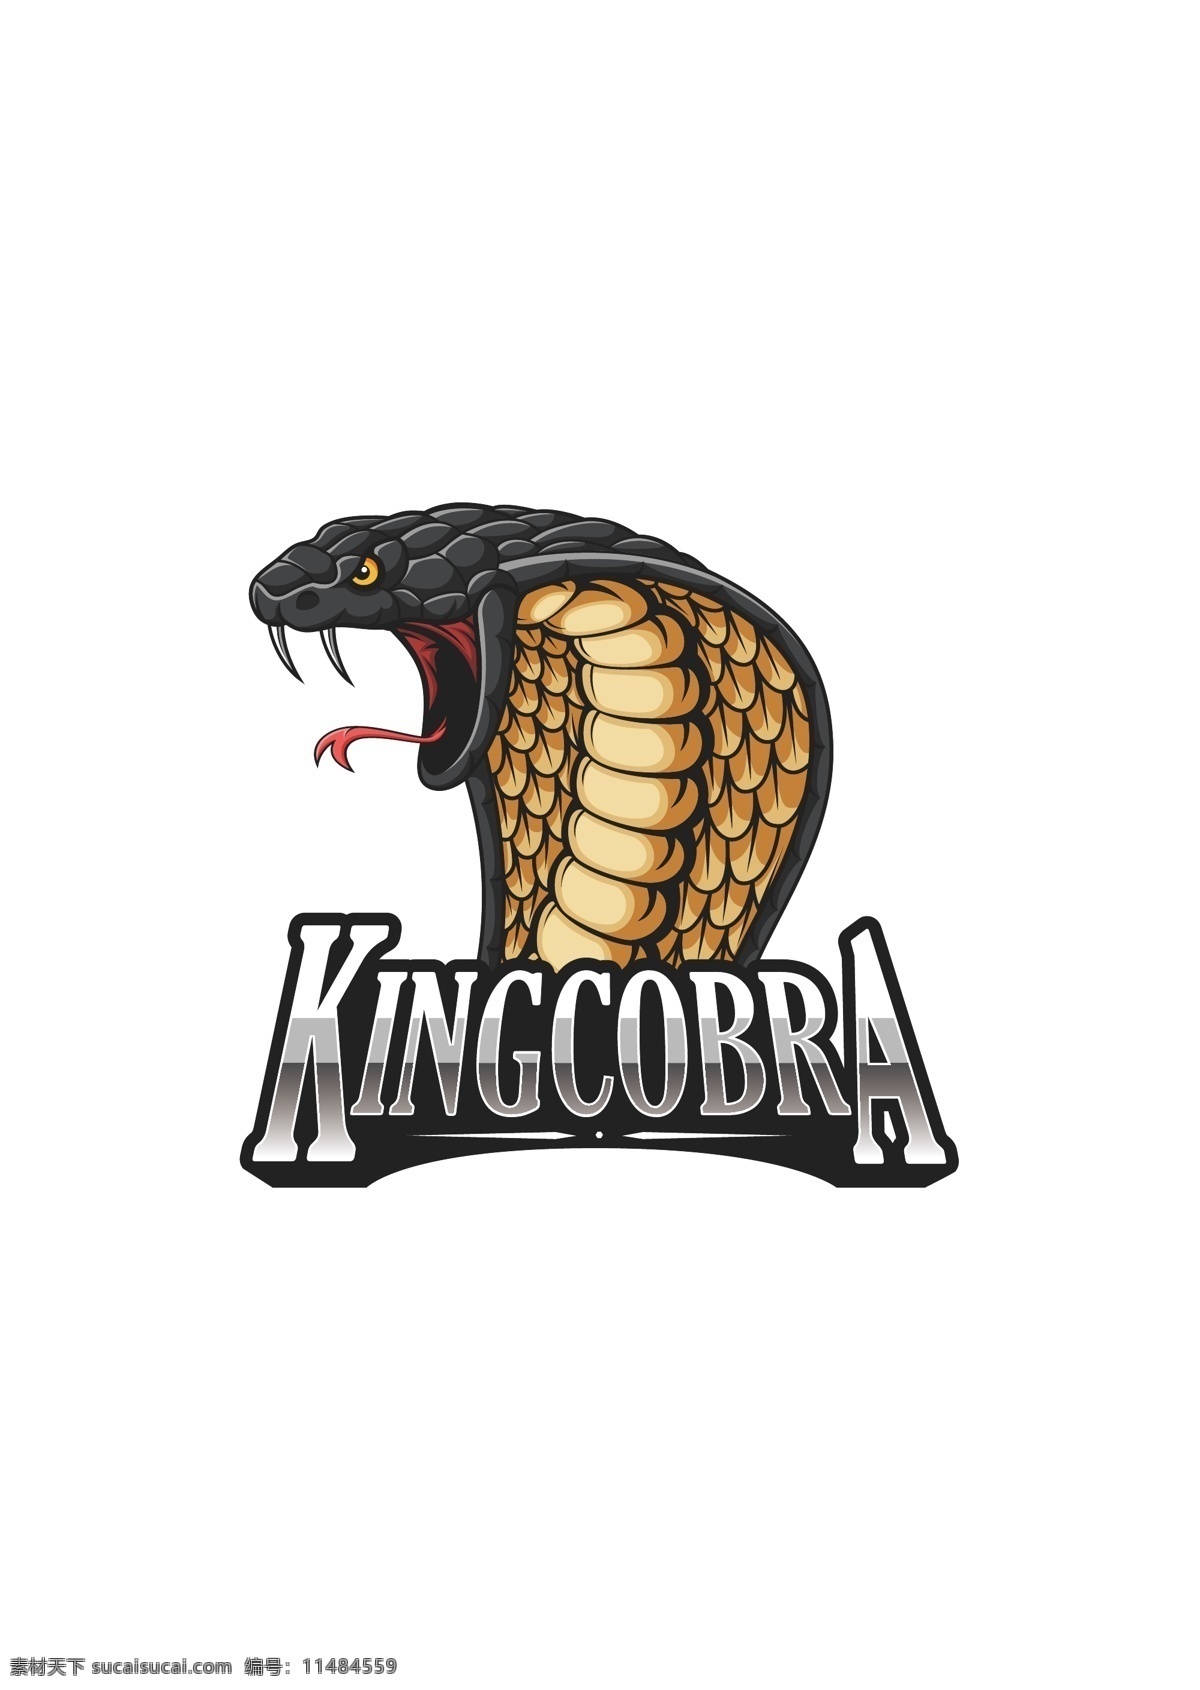 眼镜蛇 logo 游戏 图标 kinggobbra 眼镜蛇矢量图 标志图标 其他图标